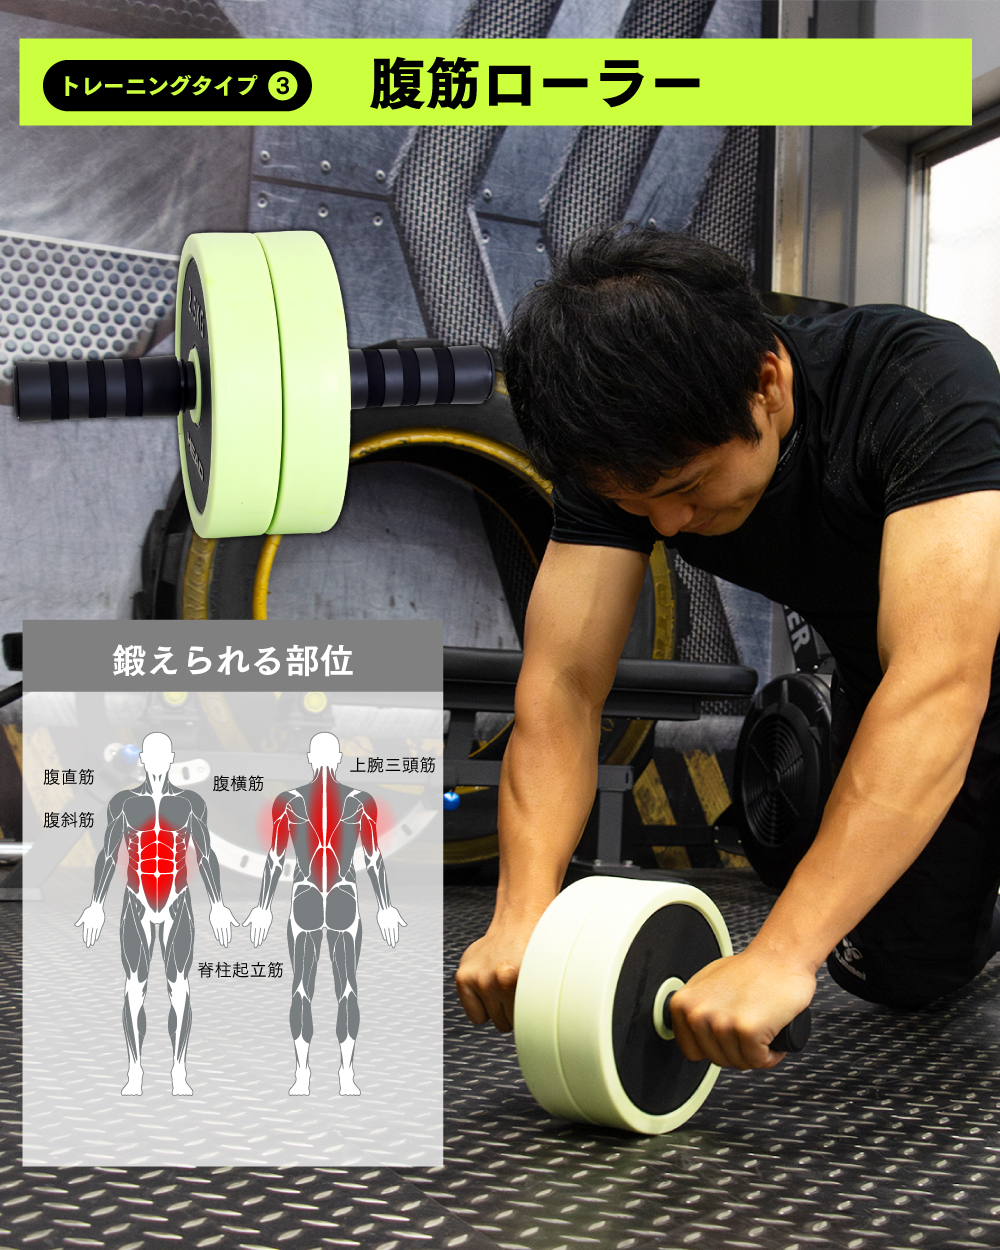 ダンベル 可変式 マルチトレーニング 20kg アドバンストセット 腹筋ローラー バーベル プッシュアップバー ケトルベル